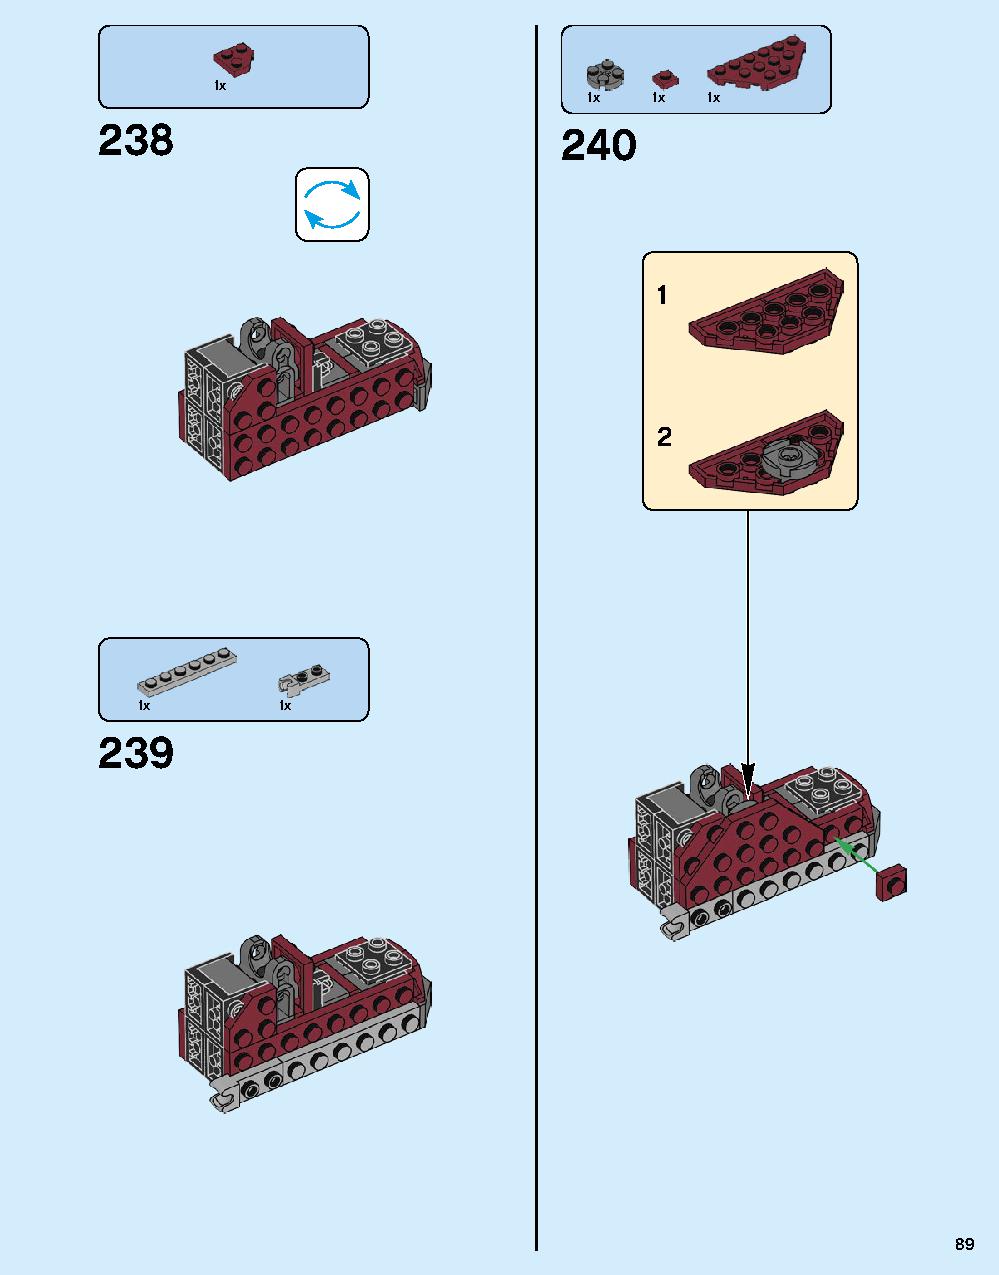 ハルクバスター：ウルトロン・エディション 76105 レゴの商品情報 レゴの説明書・組立方法 89 page